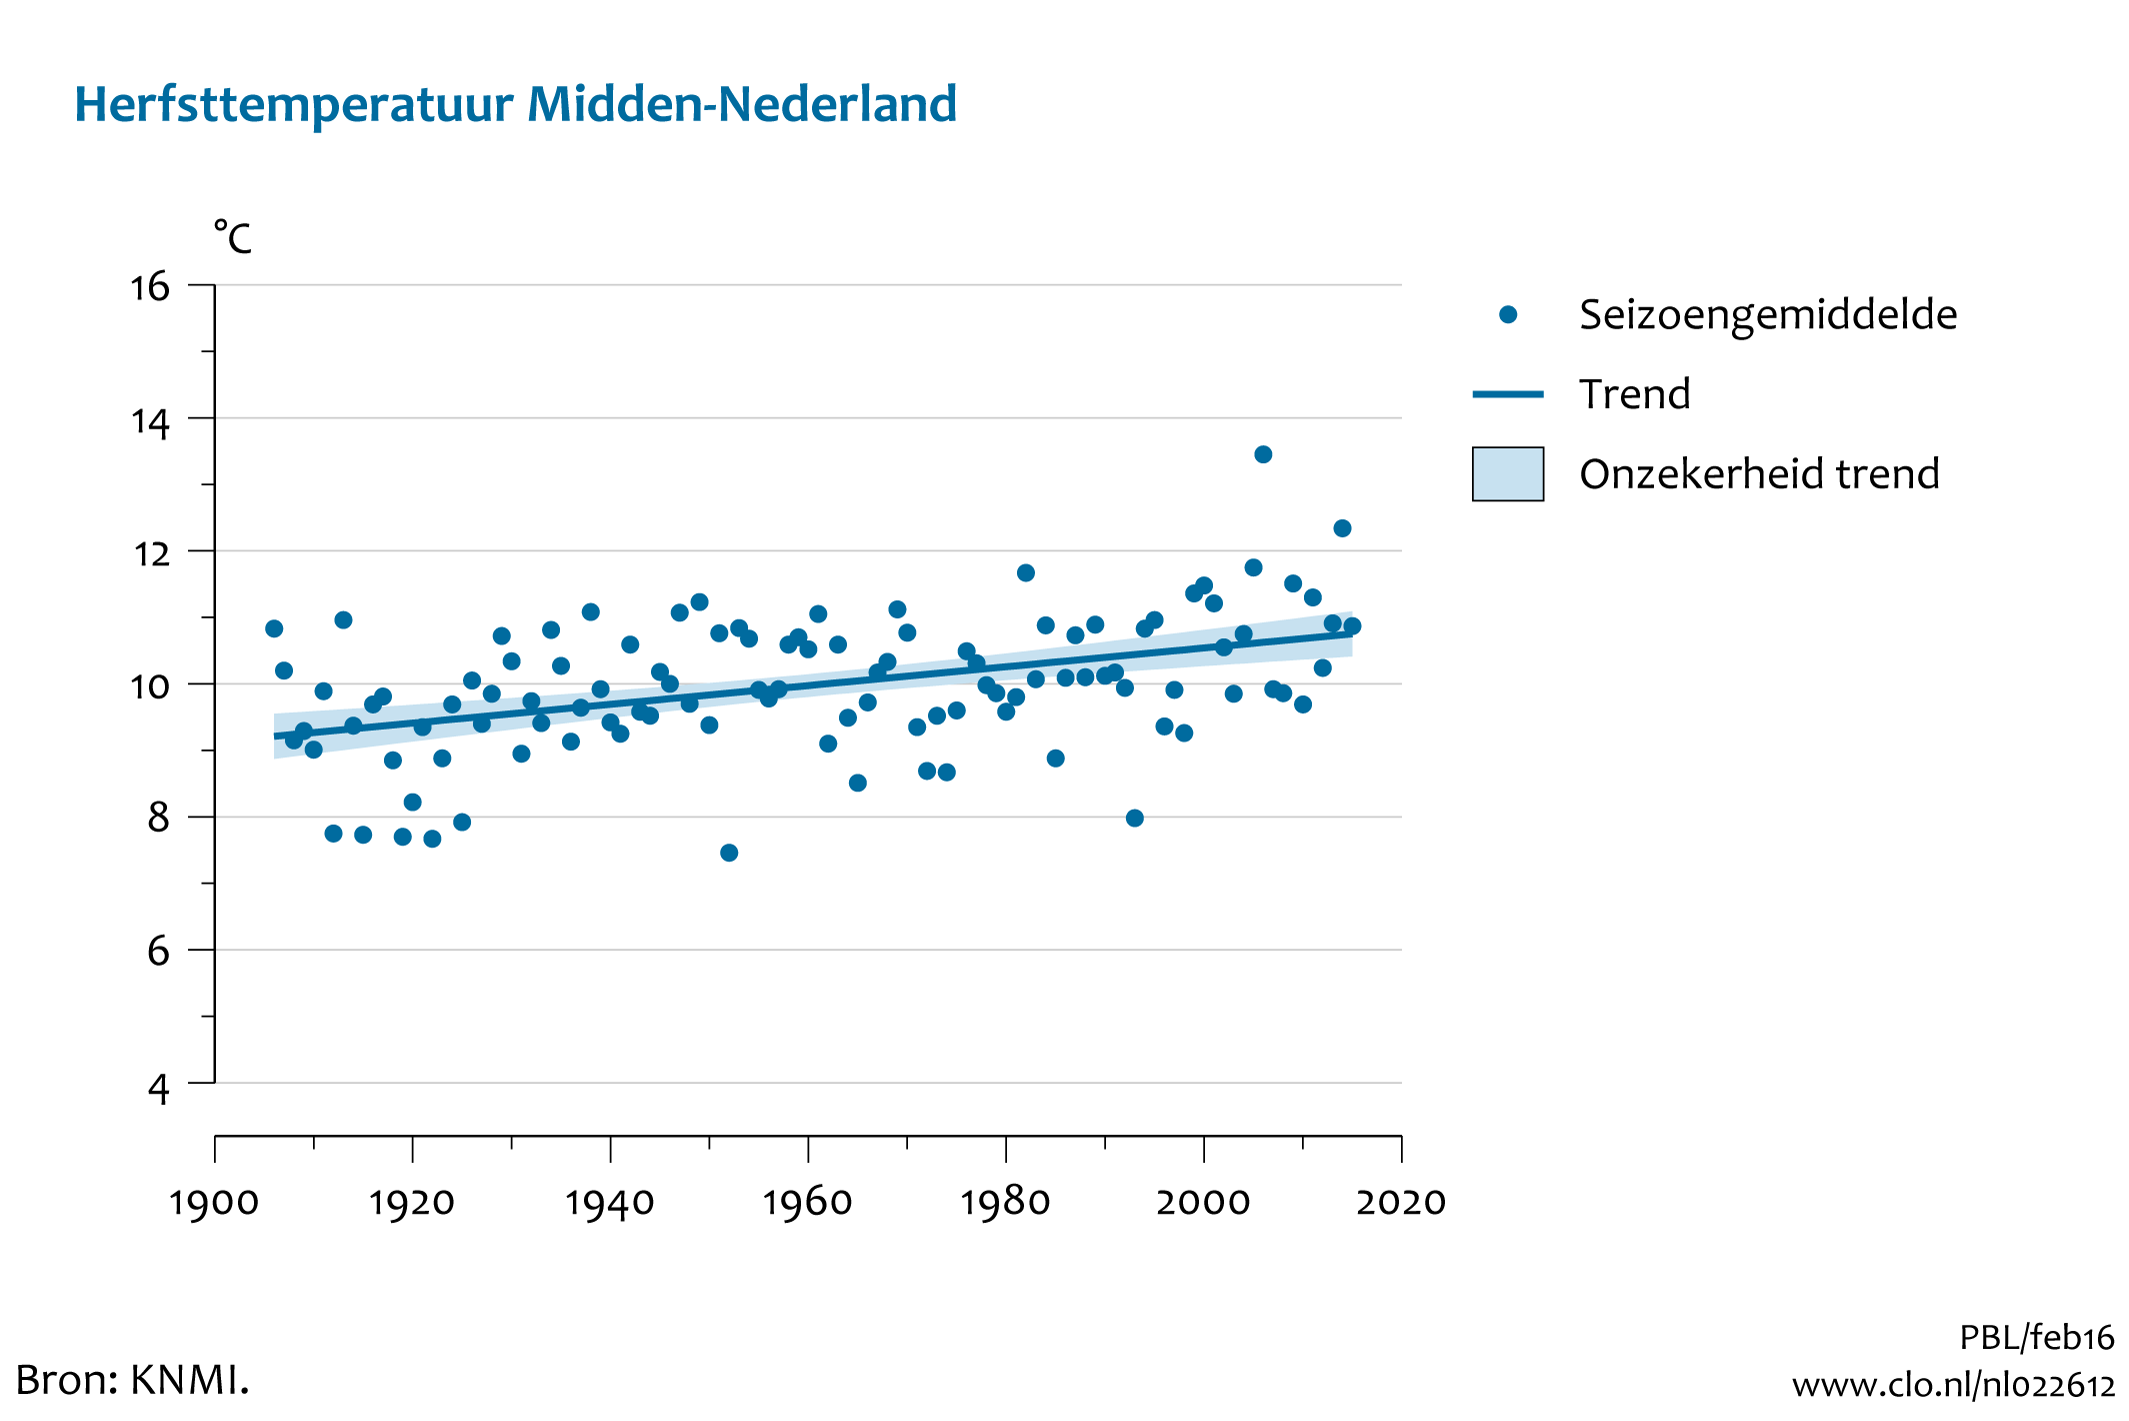 Figuur herfst temperatuur midden Nederland. In de rest van de tekst wordt deze figuur uitgebreider uitgelegd.